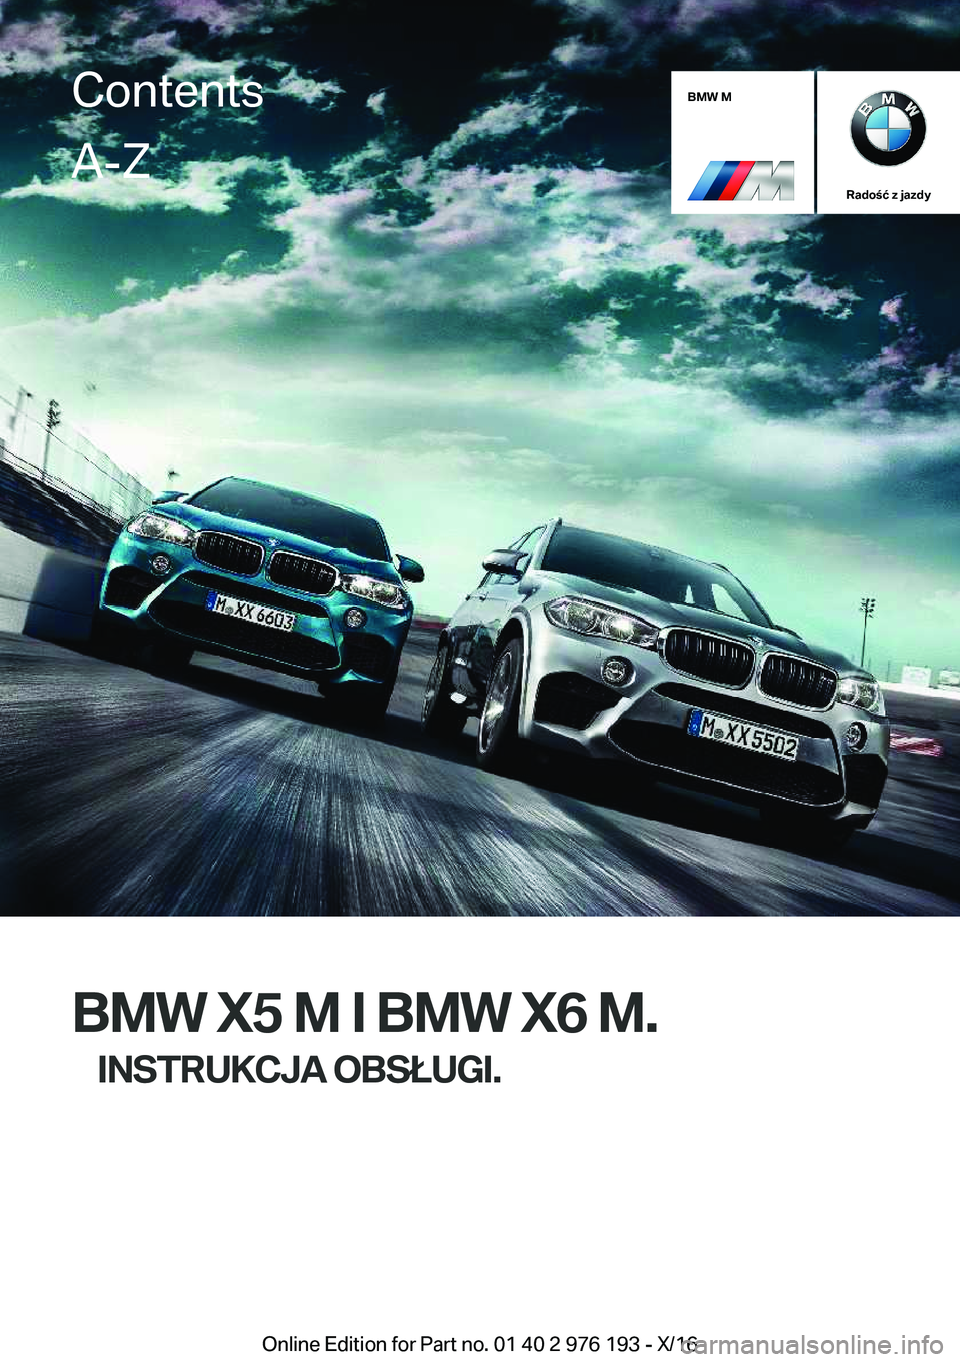 BMW X5 M 2017  Instrukcja obsługi (in Polish) �B�M�W��M
�R�a�d�o�